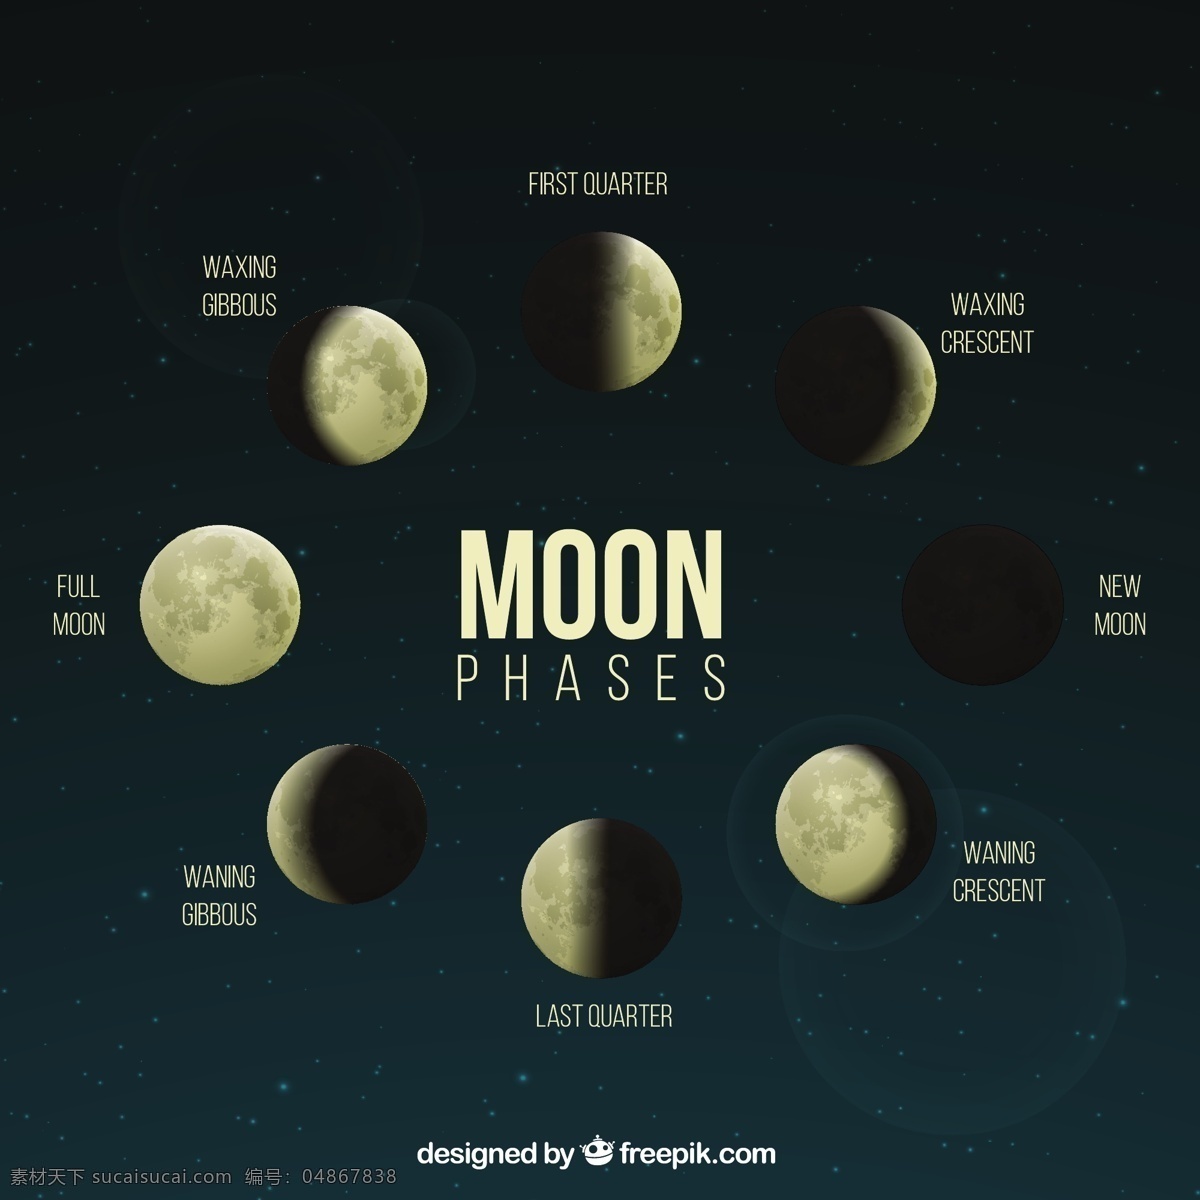 月球 现实 阶段 日历 天空 月亮 数字 时间 夜晚 时间表 计划者 夜空 宇宙 年 季节 占星术 月 满月 周计划者 月相 新月 每日